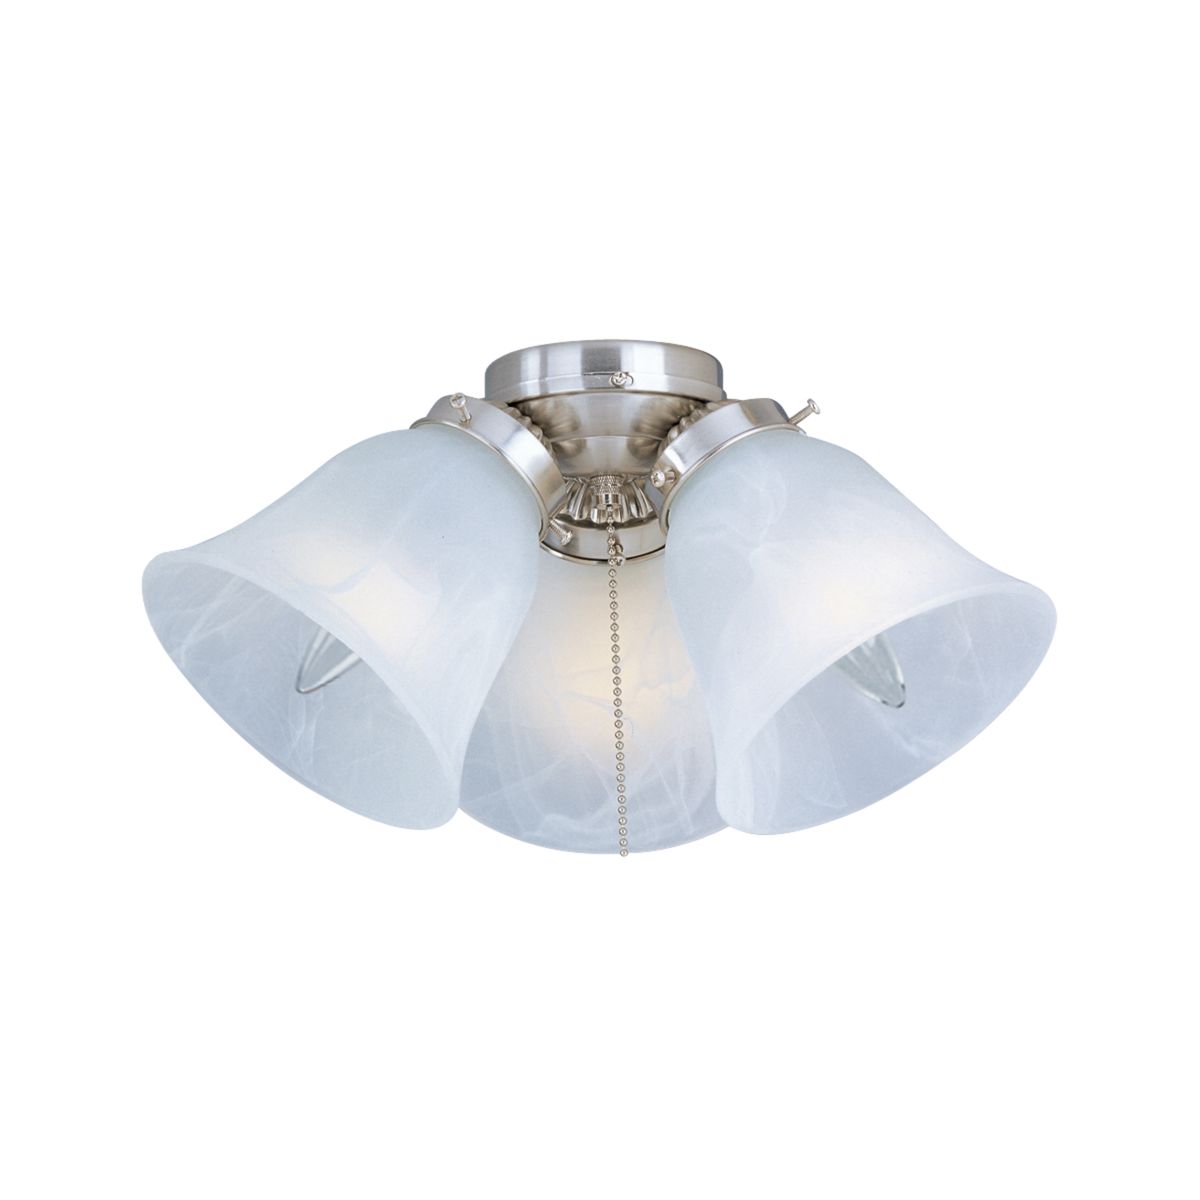 12 Inch 3 Light LED Ceiling Fan Light Kit - Bees Lighting